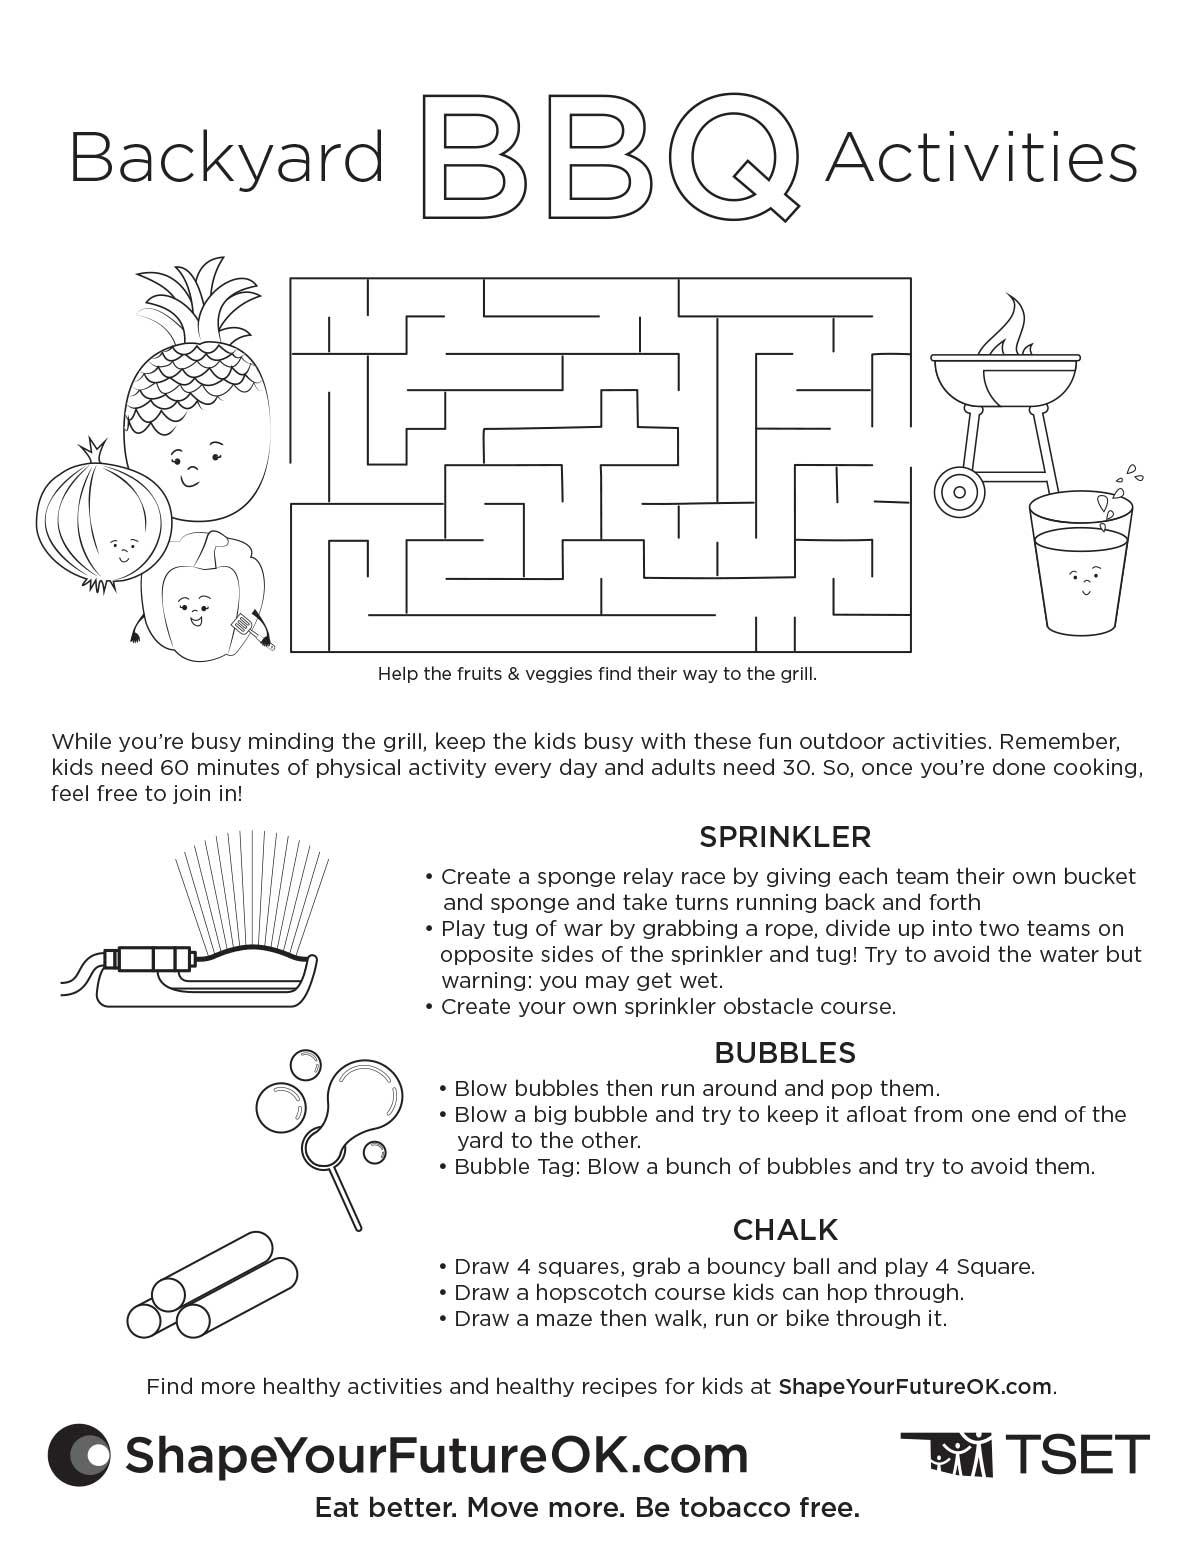 Backyard BBQ activities worksheet download